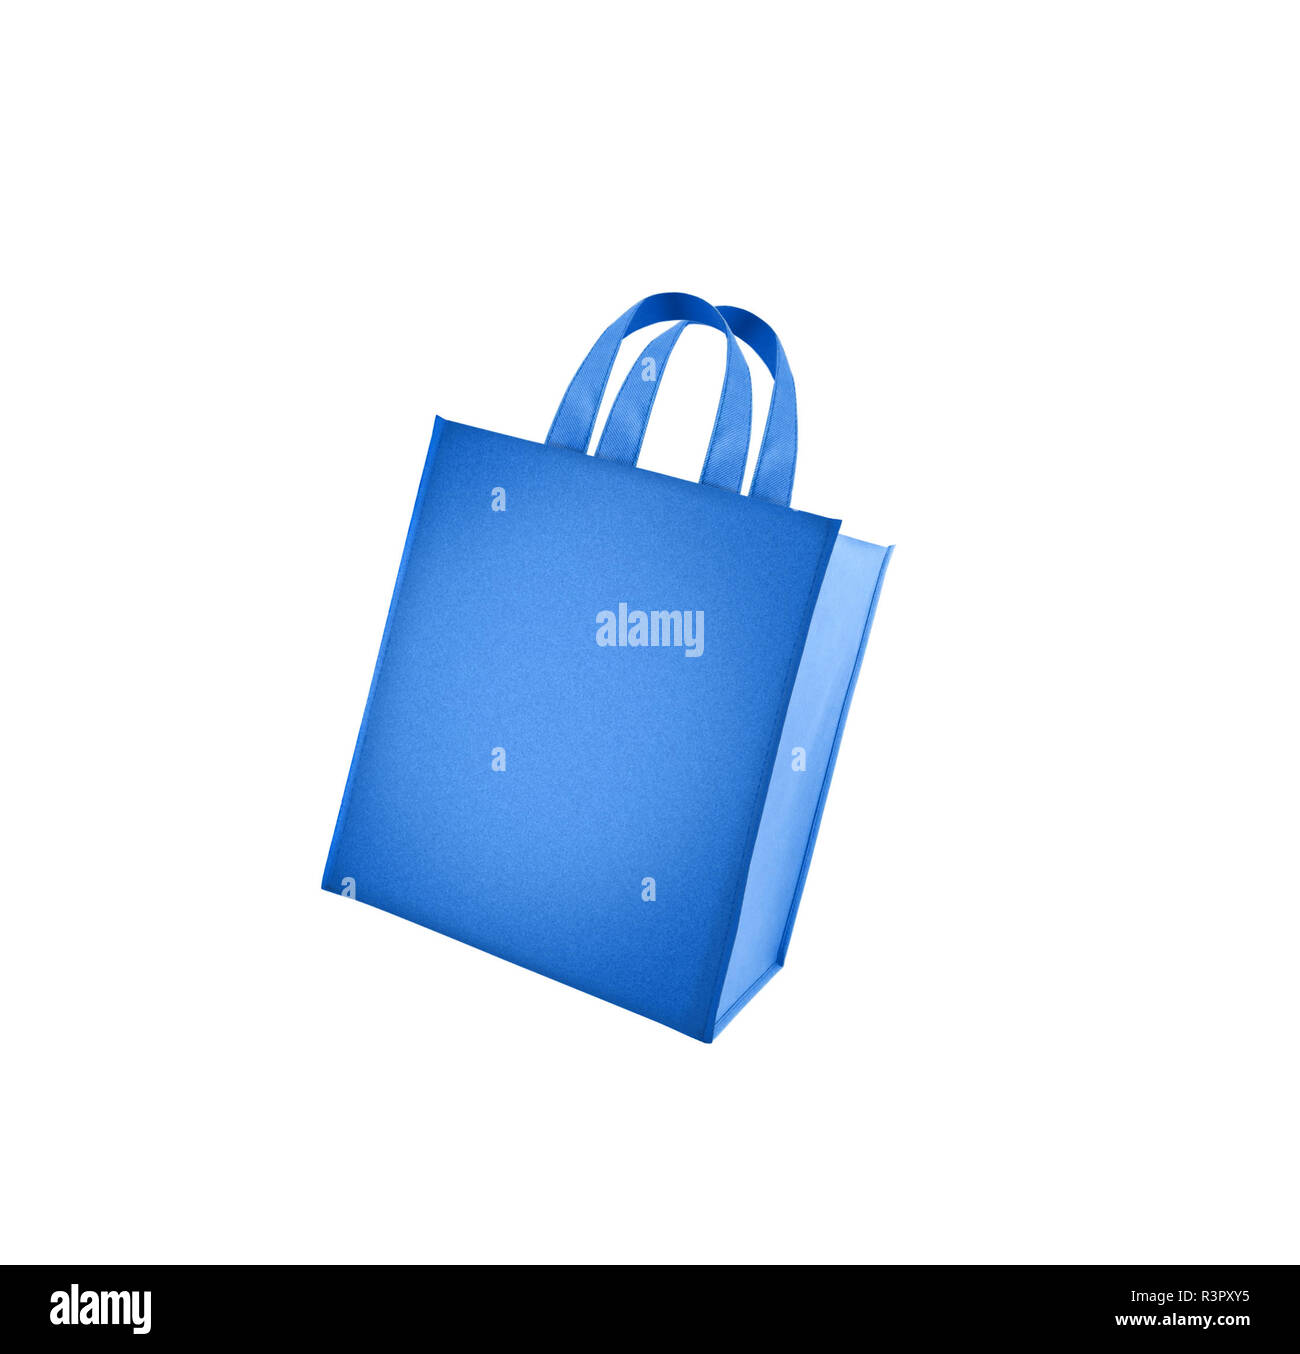 Blue shopping bag isolated on white background Stock Photo - Alamy